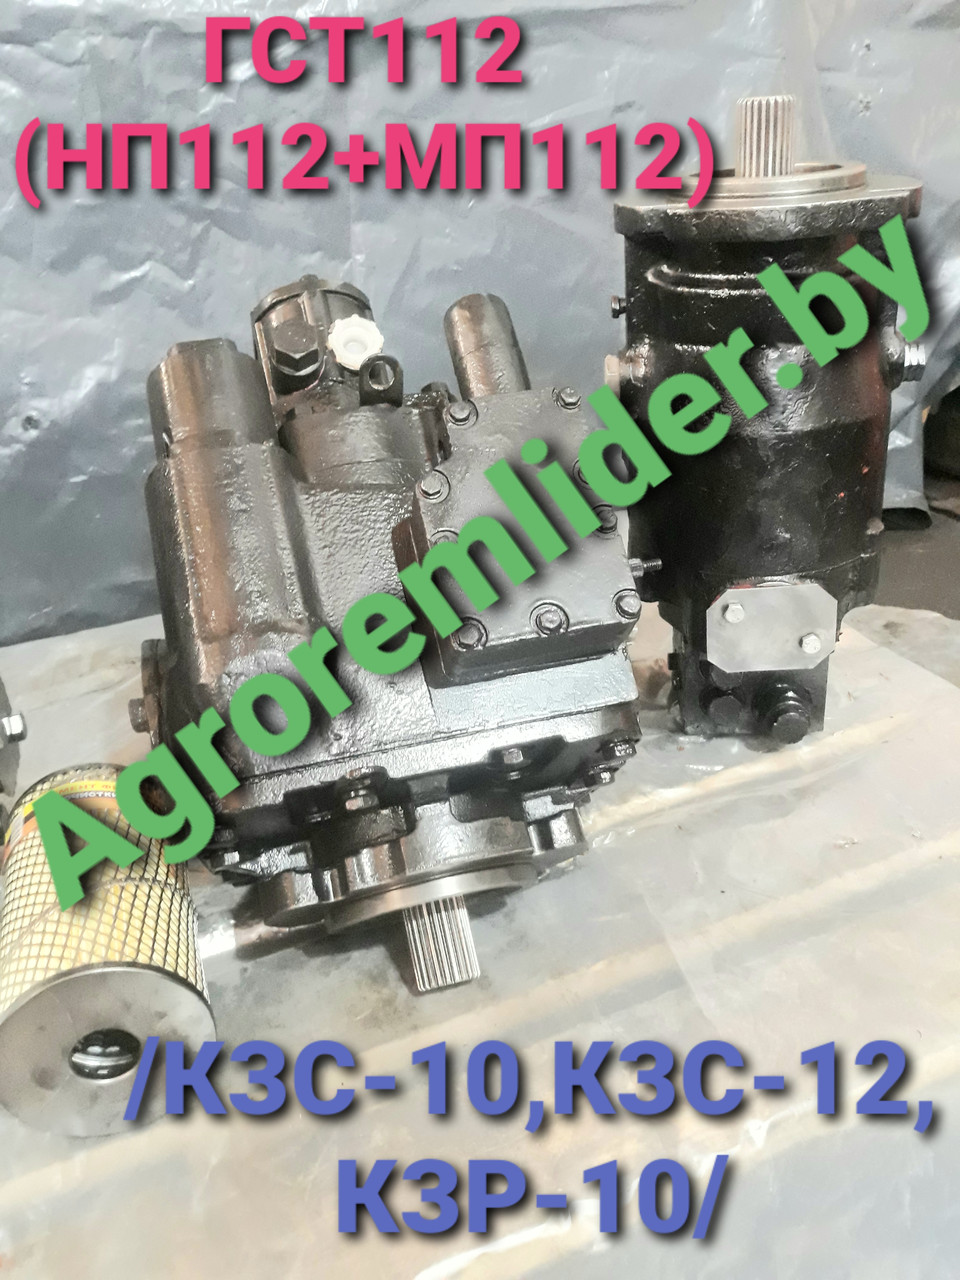 ТН112-2 + МП112-1 (гидростатика ремонтная) на КЗС-10, КЗС-1218 /GS12/, КВК-800 /FS80/